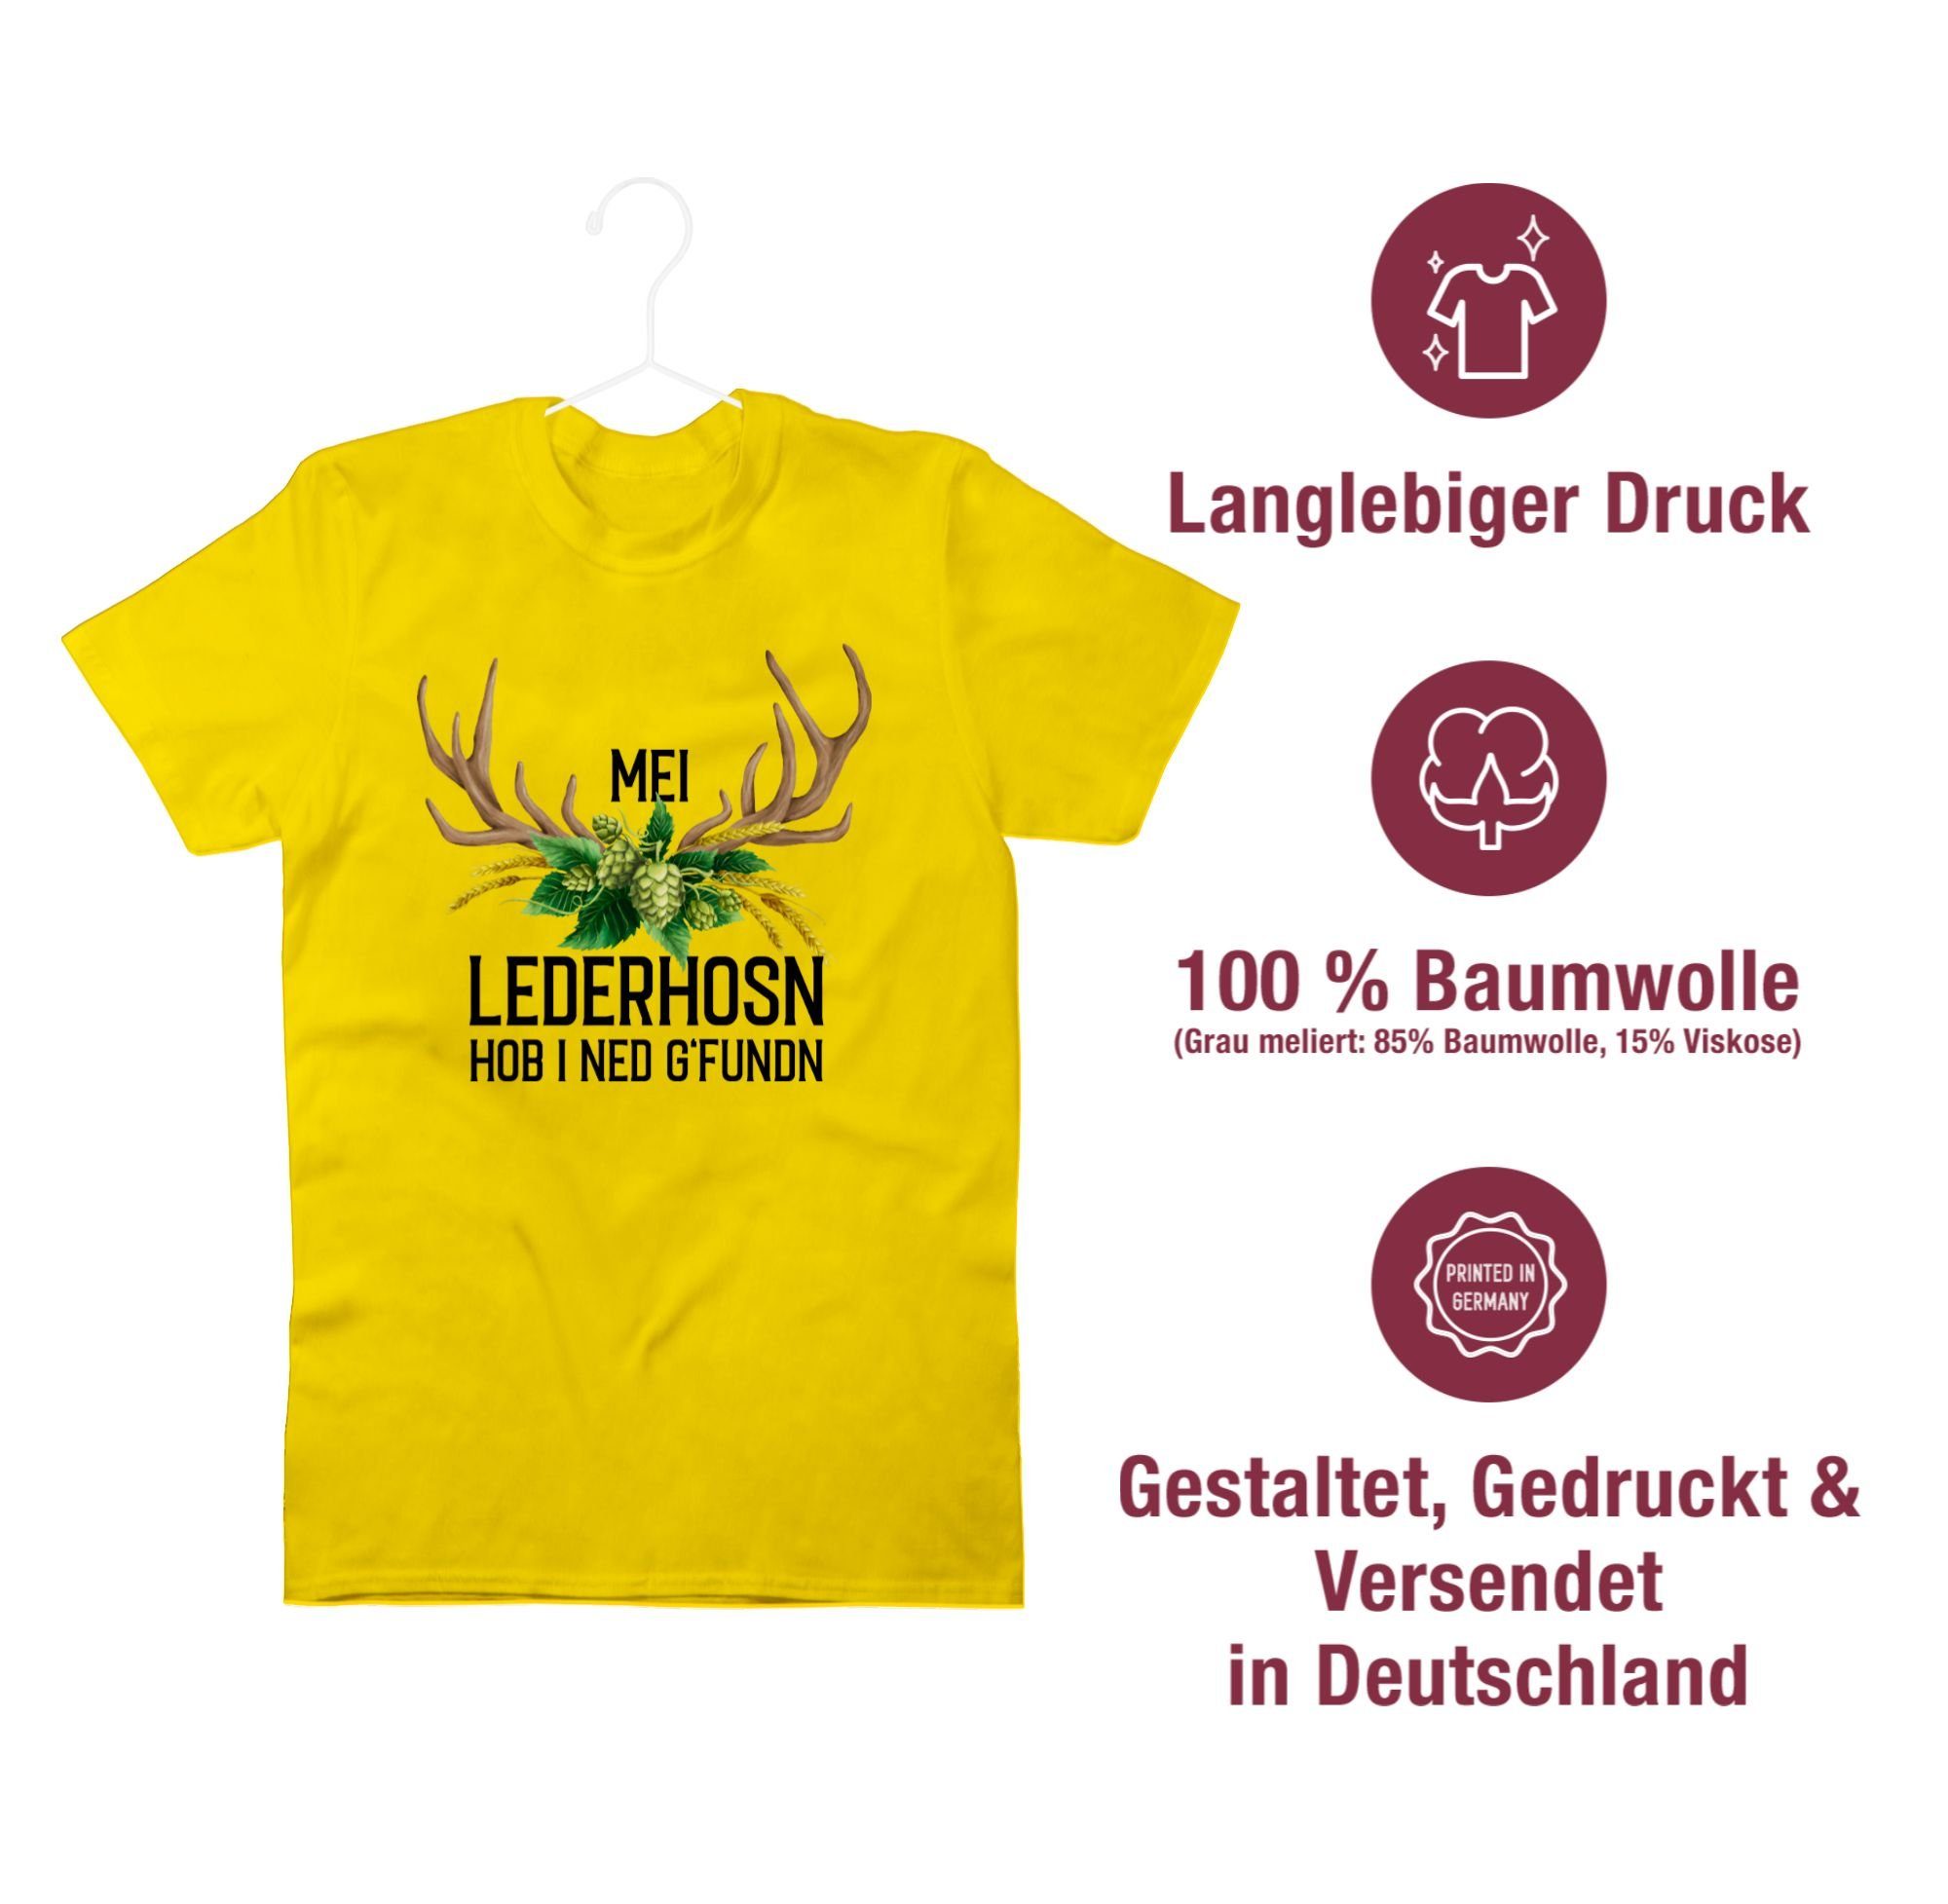 g'fundn - Oktoberfest Gelb hob Shirtracer und Hopfen T-Shirt Herren i 03 für Weizen Mode Hirschgeweih Lederhosn ned Mei